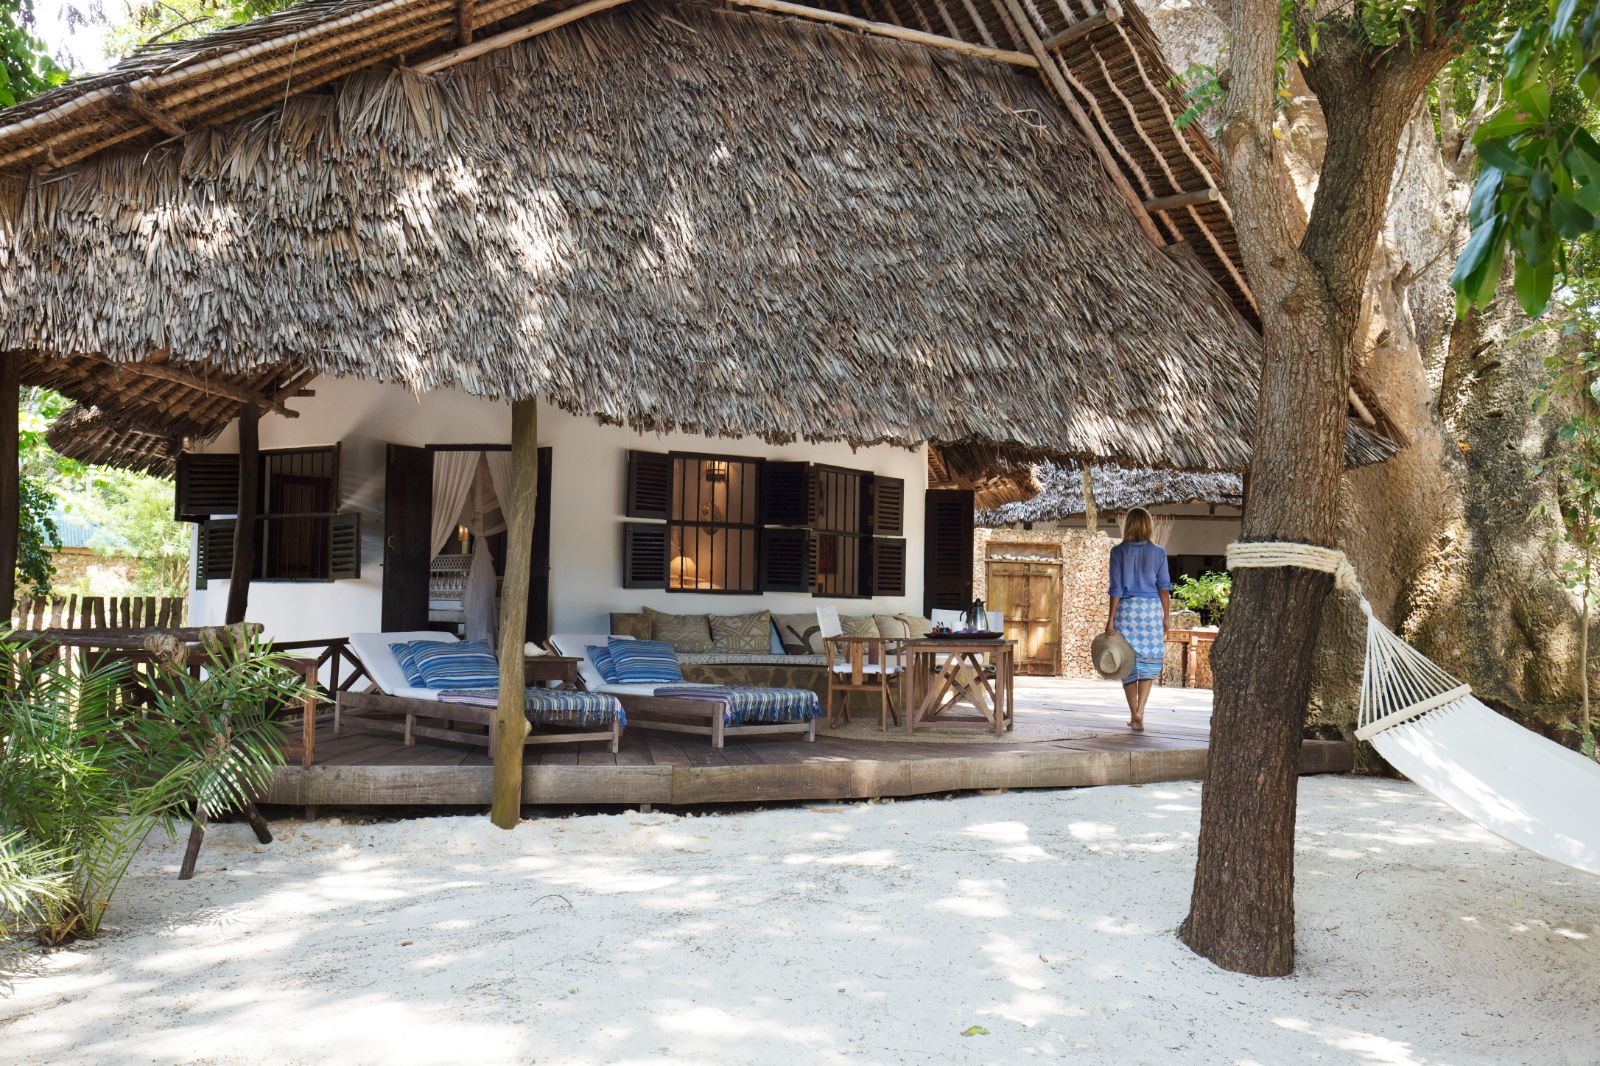 Veranda of a bungalow at Kinondo Kwetu, Kenya